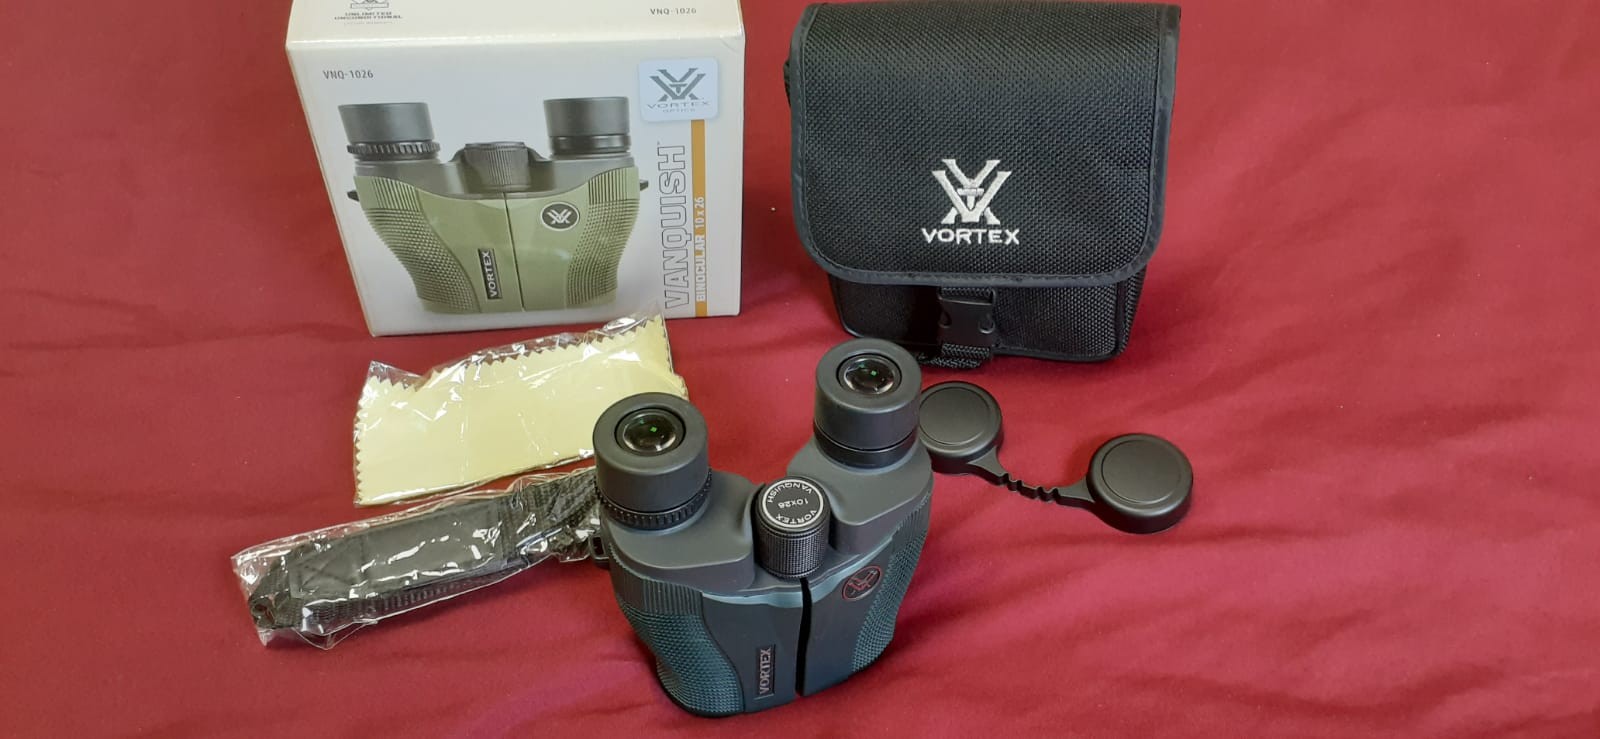 hobby y coleccion - Binocular compacto: Vortex Vanquish 10:26